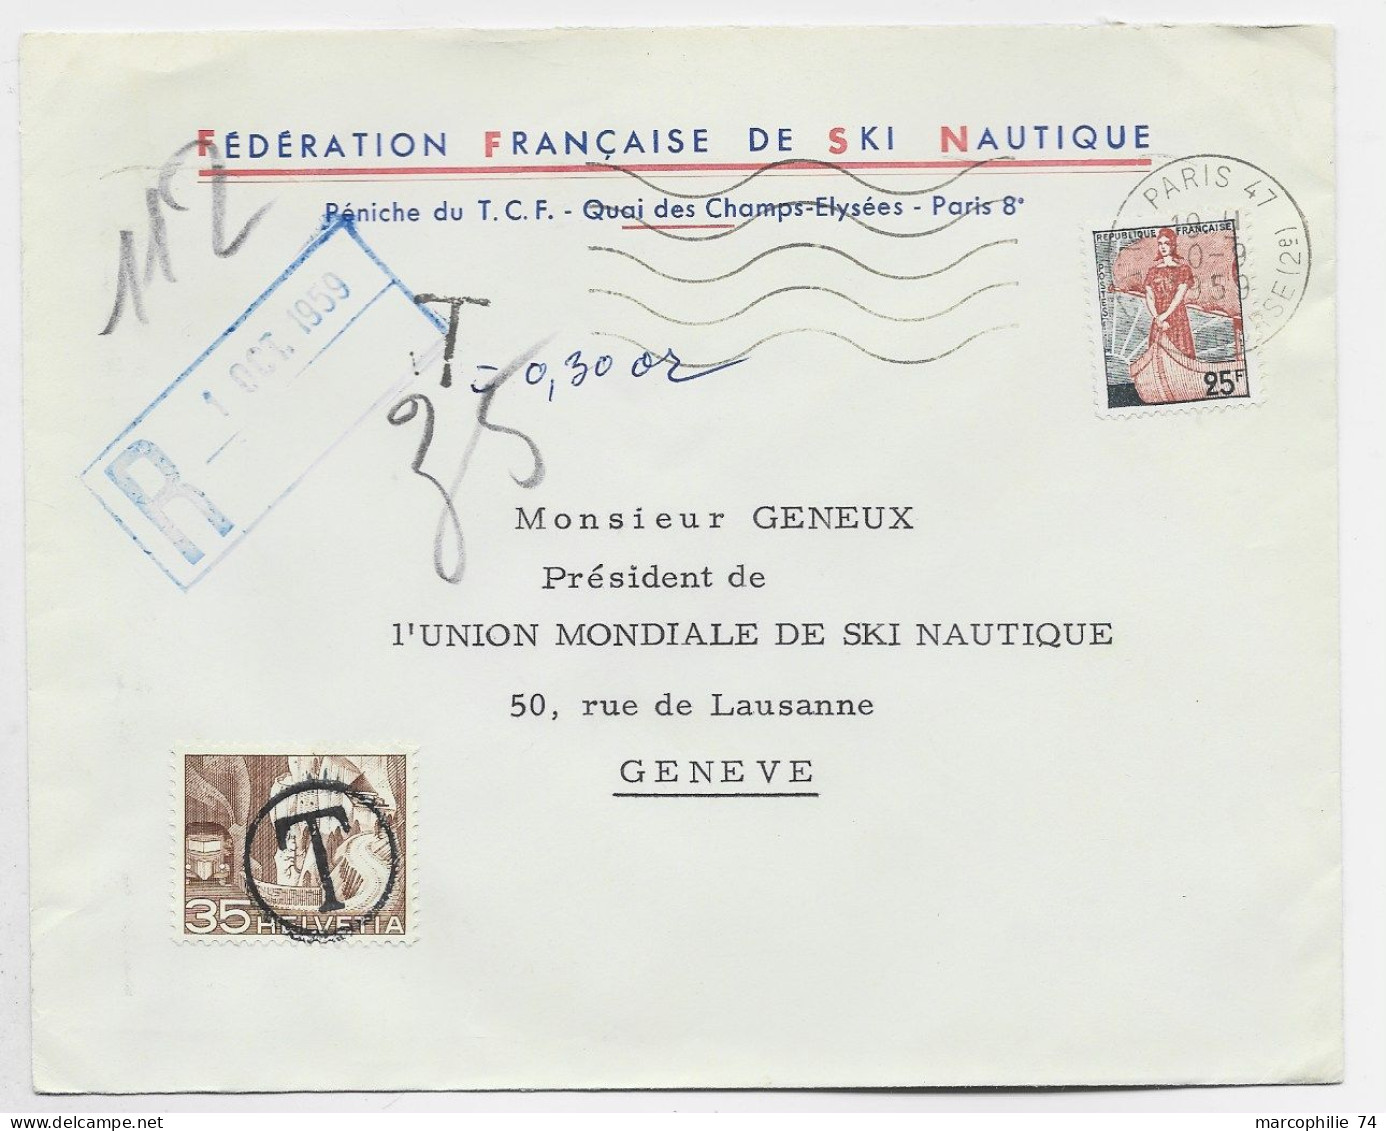 FRANCE LETTRE COVER ENTETE FEDERATION FRANCAISE DE SKI NAUTIQUE MARIANNE A LE NEF 25FR PARIS 1959 POUR SUISSE TAXE 35C - Sci Nautico